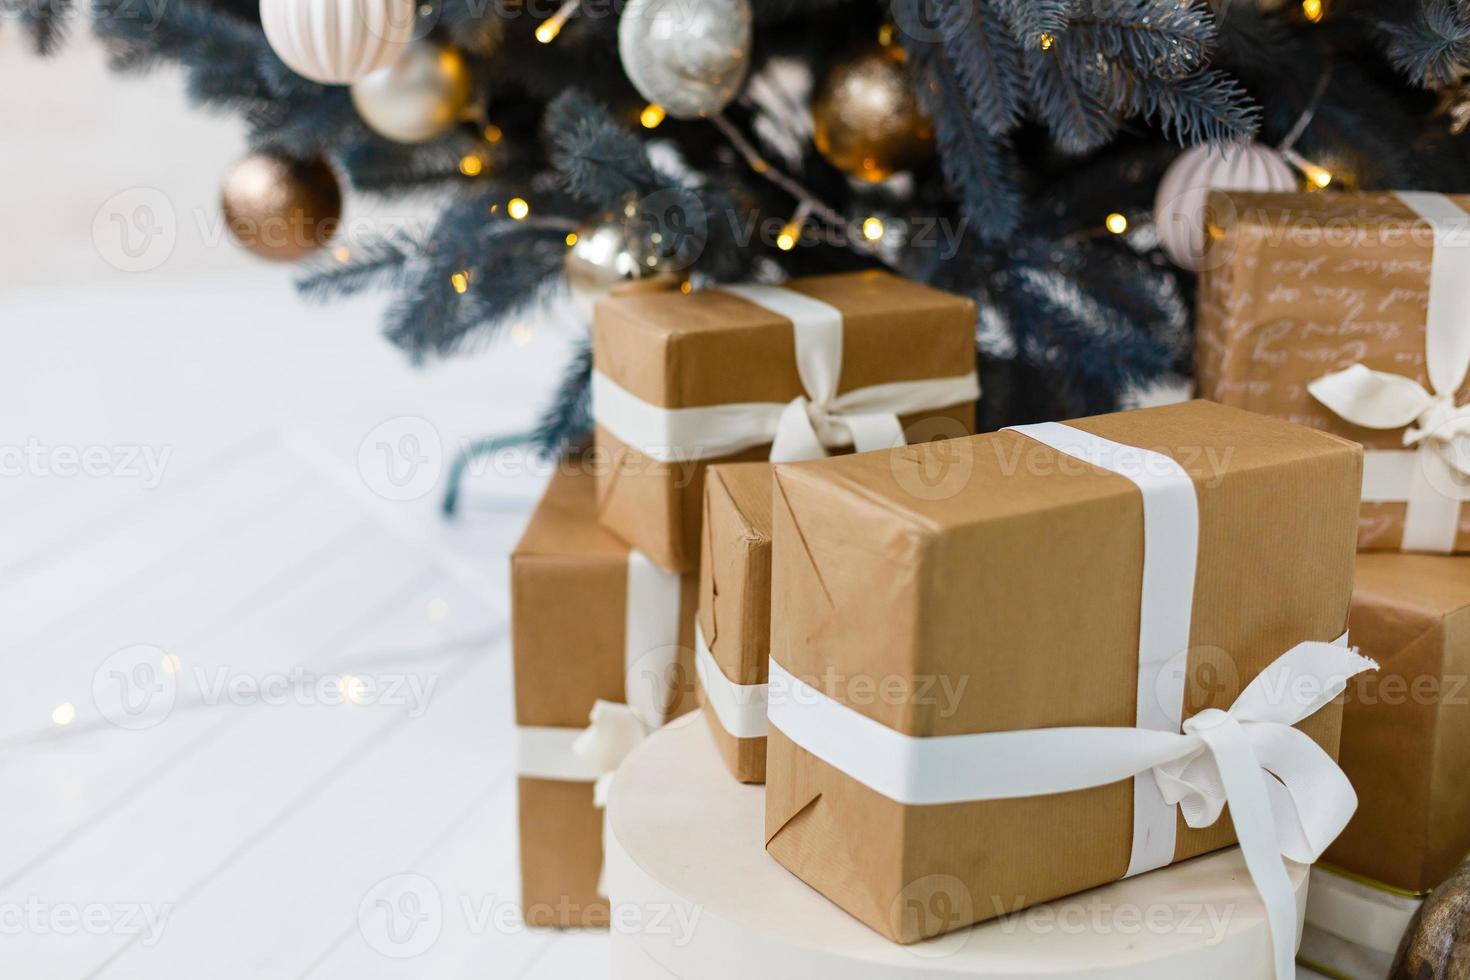 geschenke und geschenke unter weihnachtsbaum winterurlaub konzept foto